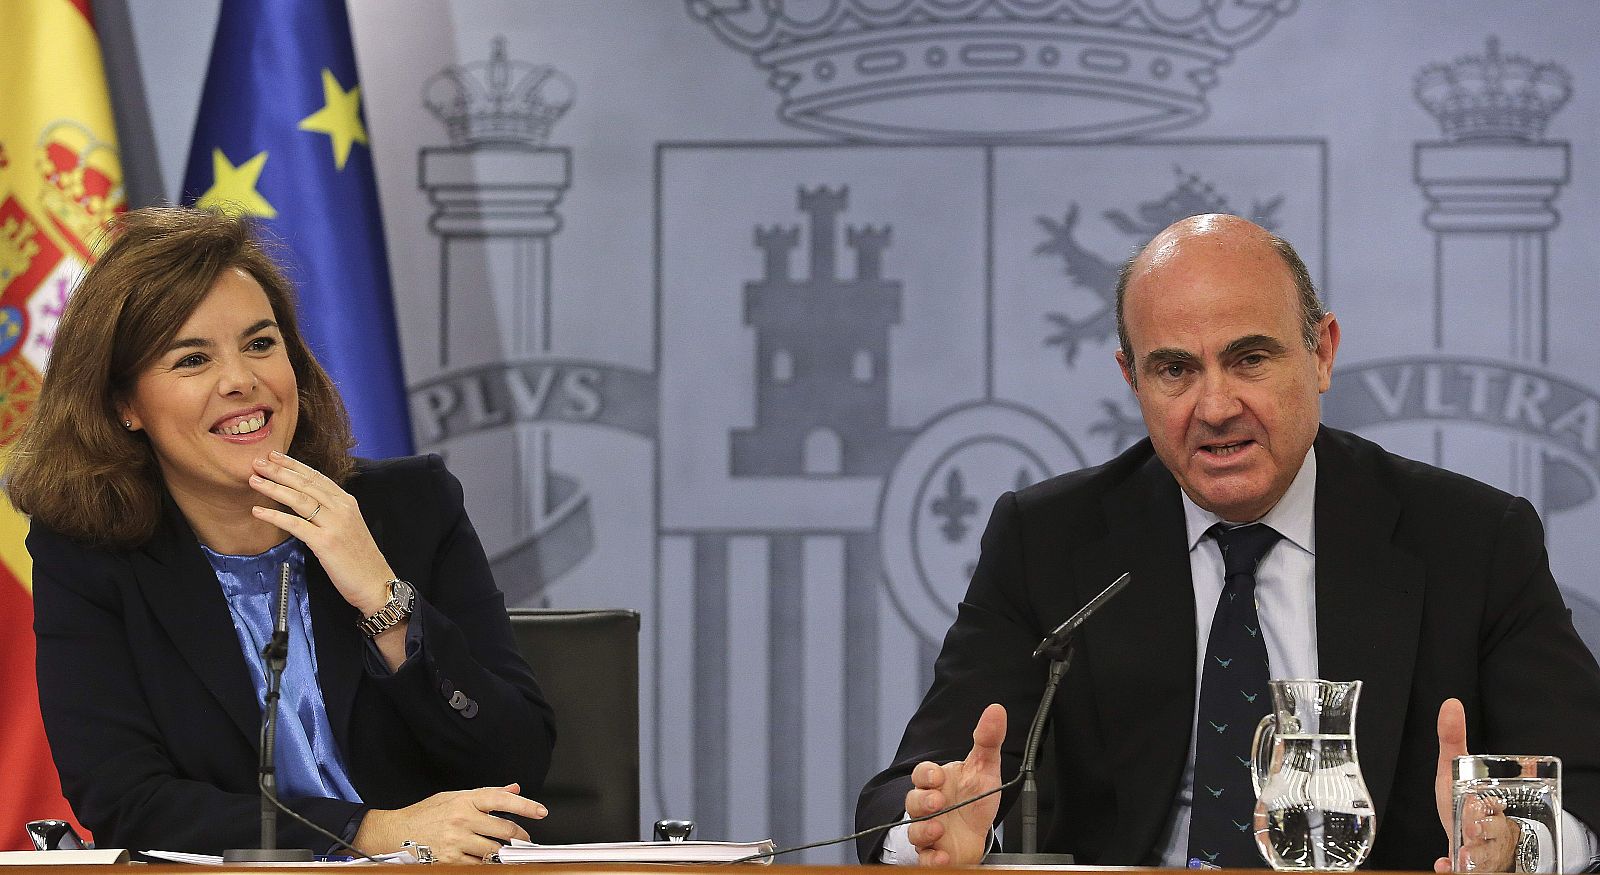 La vicepresidenta del Gobierno, Soraya Sáenz de Santamaría, y el ministro de Economía y Competitividad, Luis de Guindos